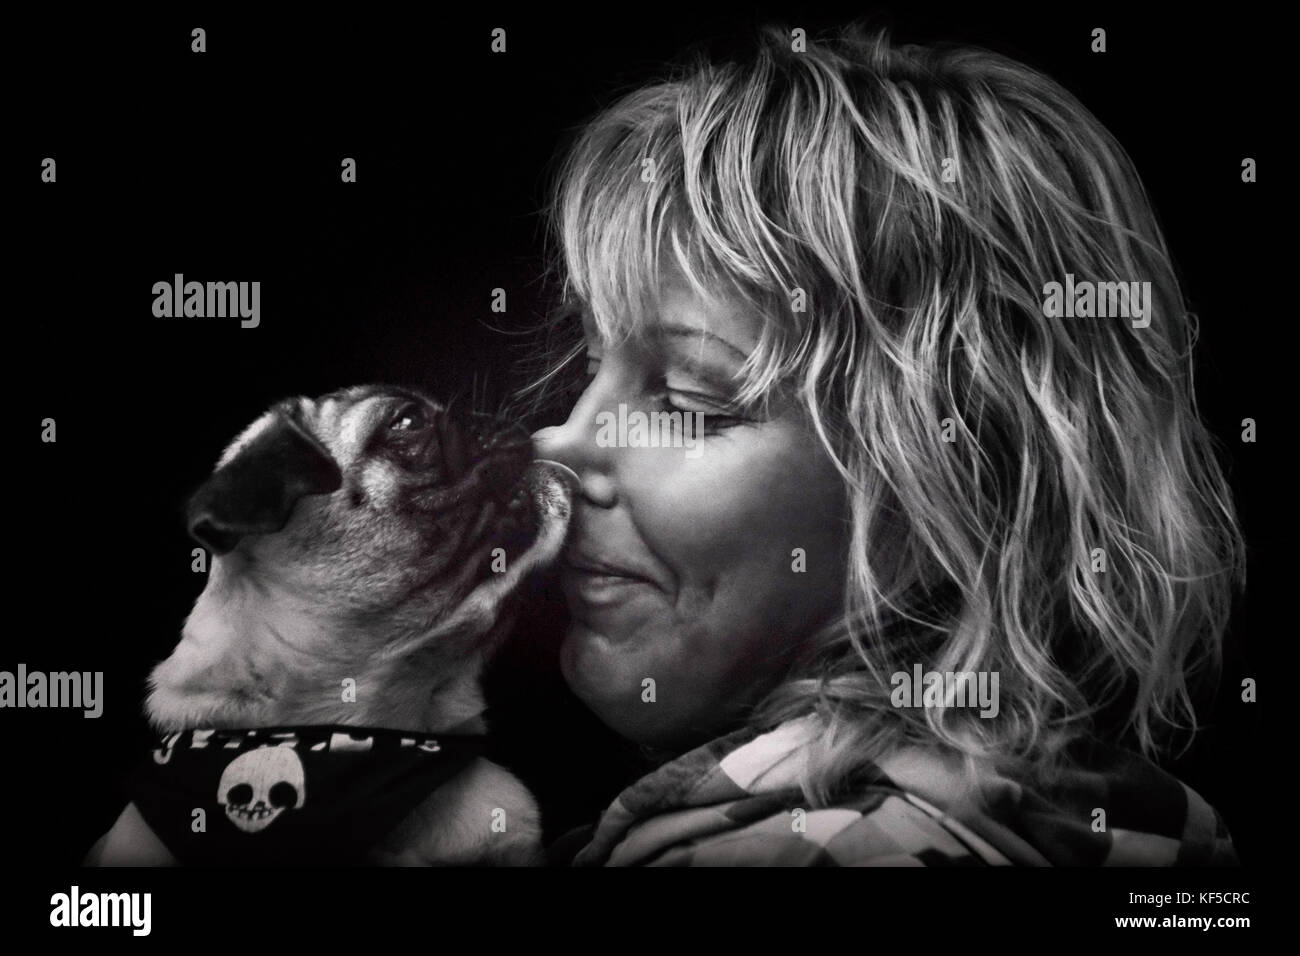 Le PUG dog puppy lèche le nez d'une femme blonde Banque D'Images